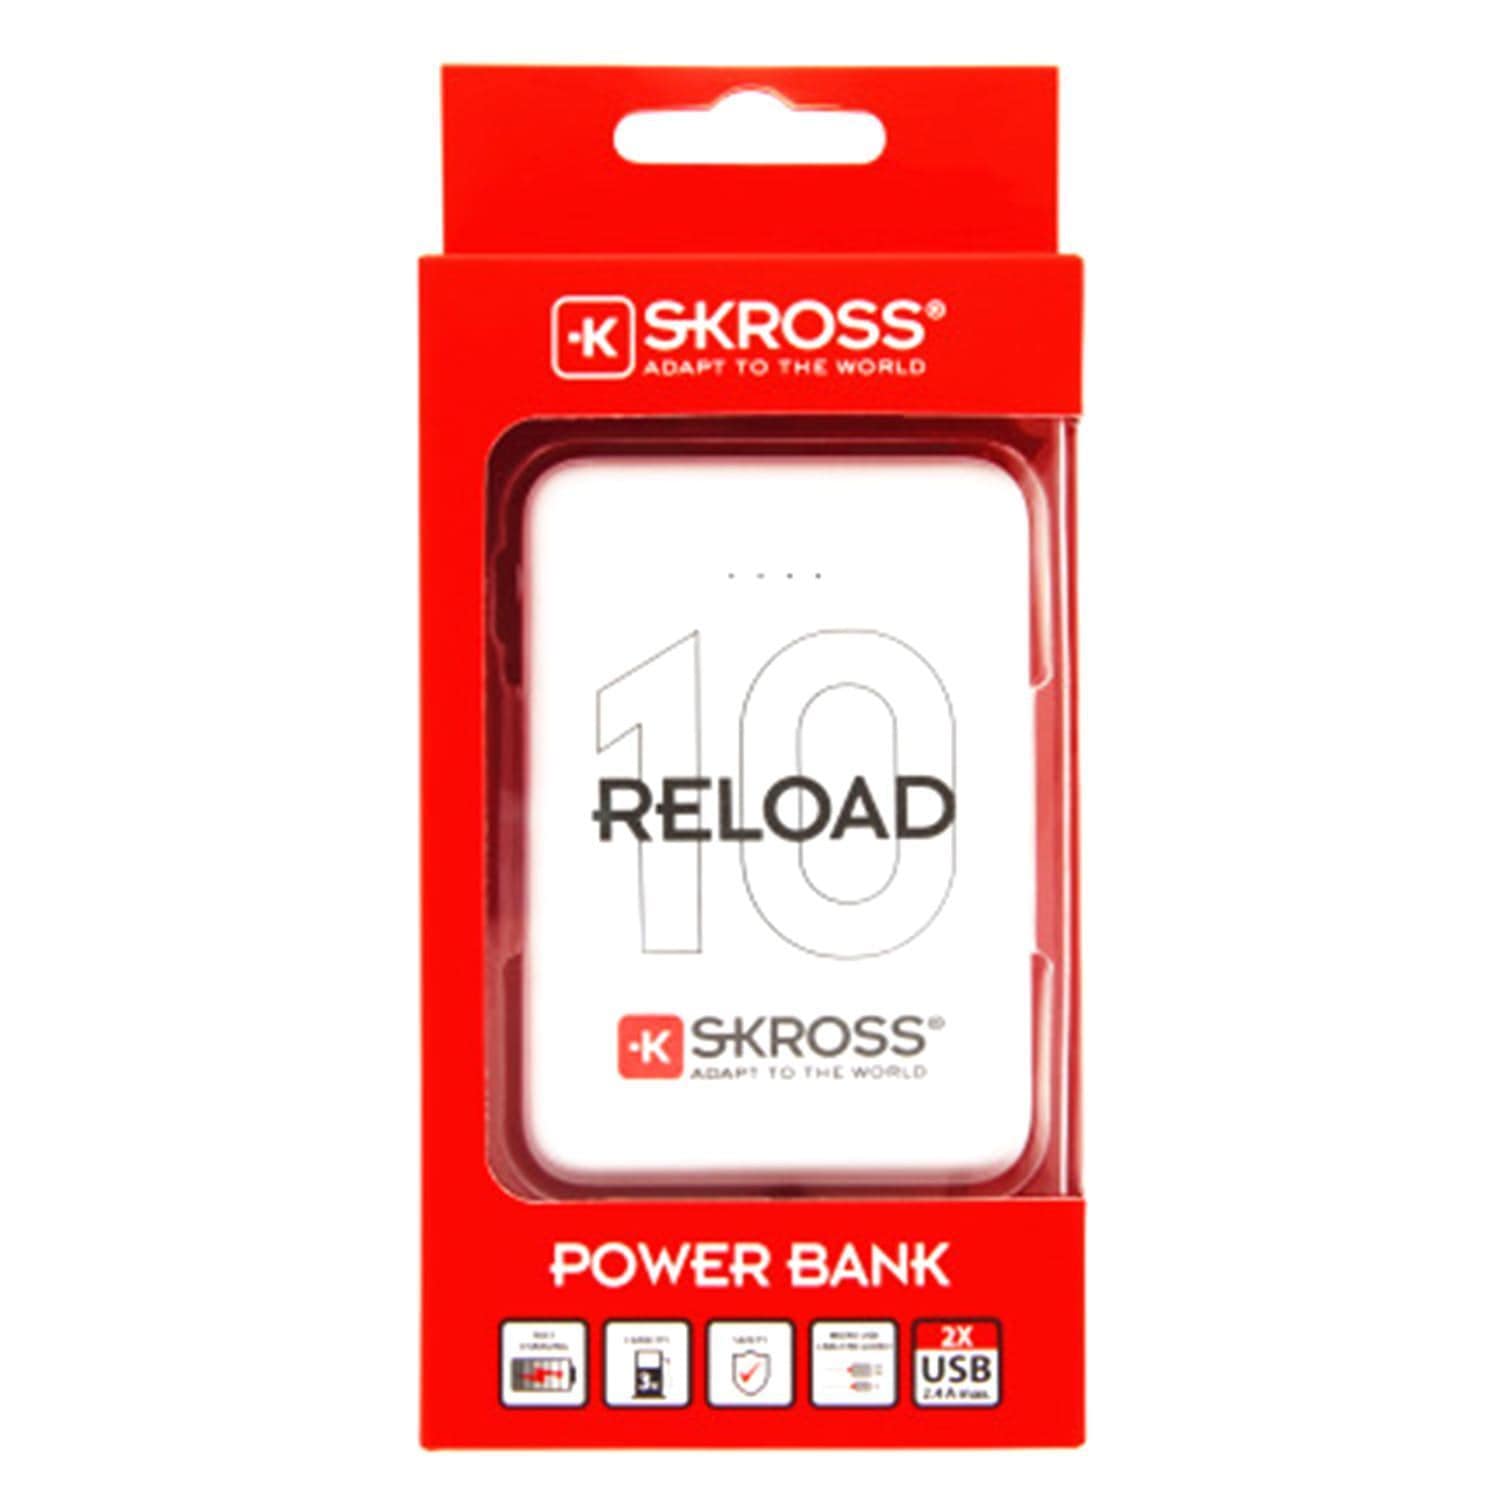 Skross Reload 10 10000 mAh Power Bank - White - 1400130 - Jashanmal Home